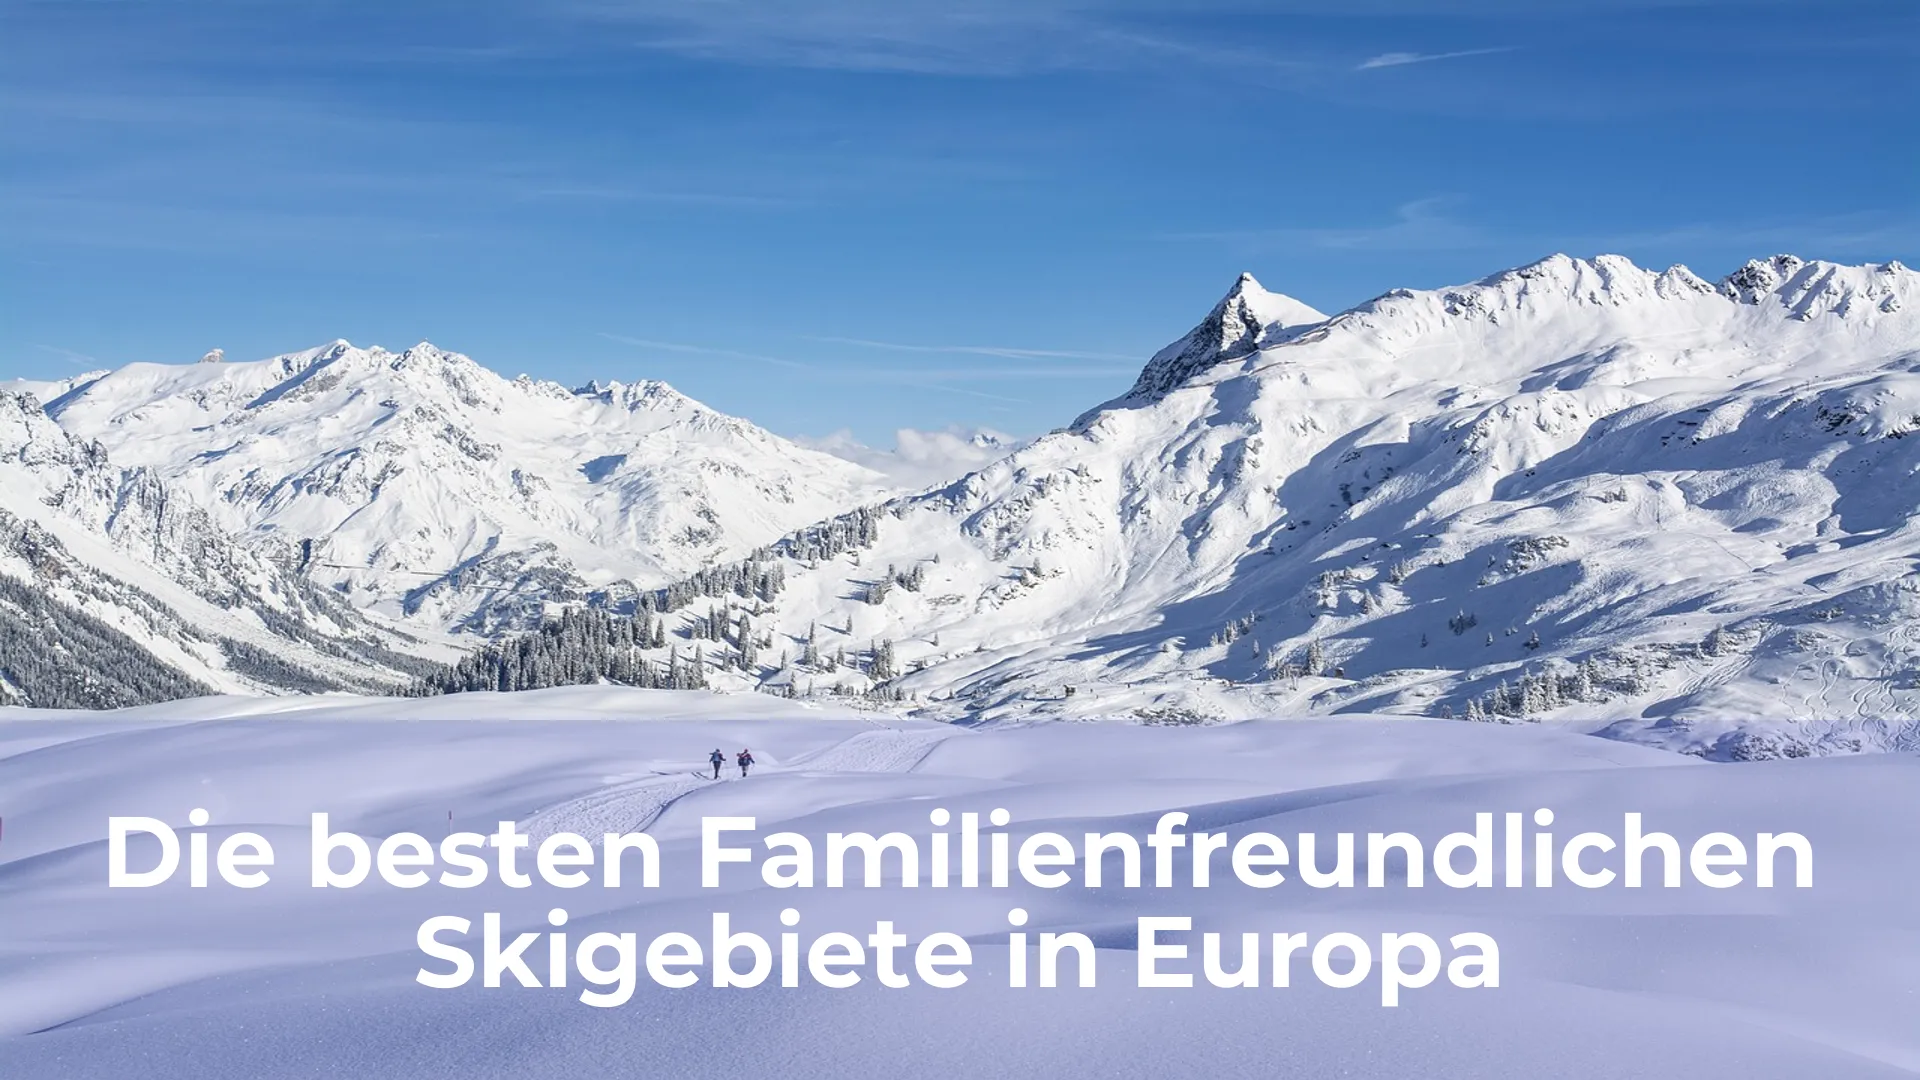 Die besten familienfreundlichen skigebiete in europa